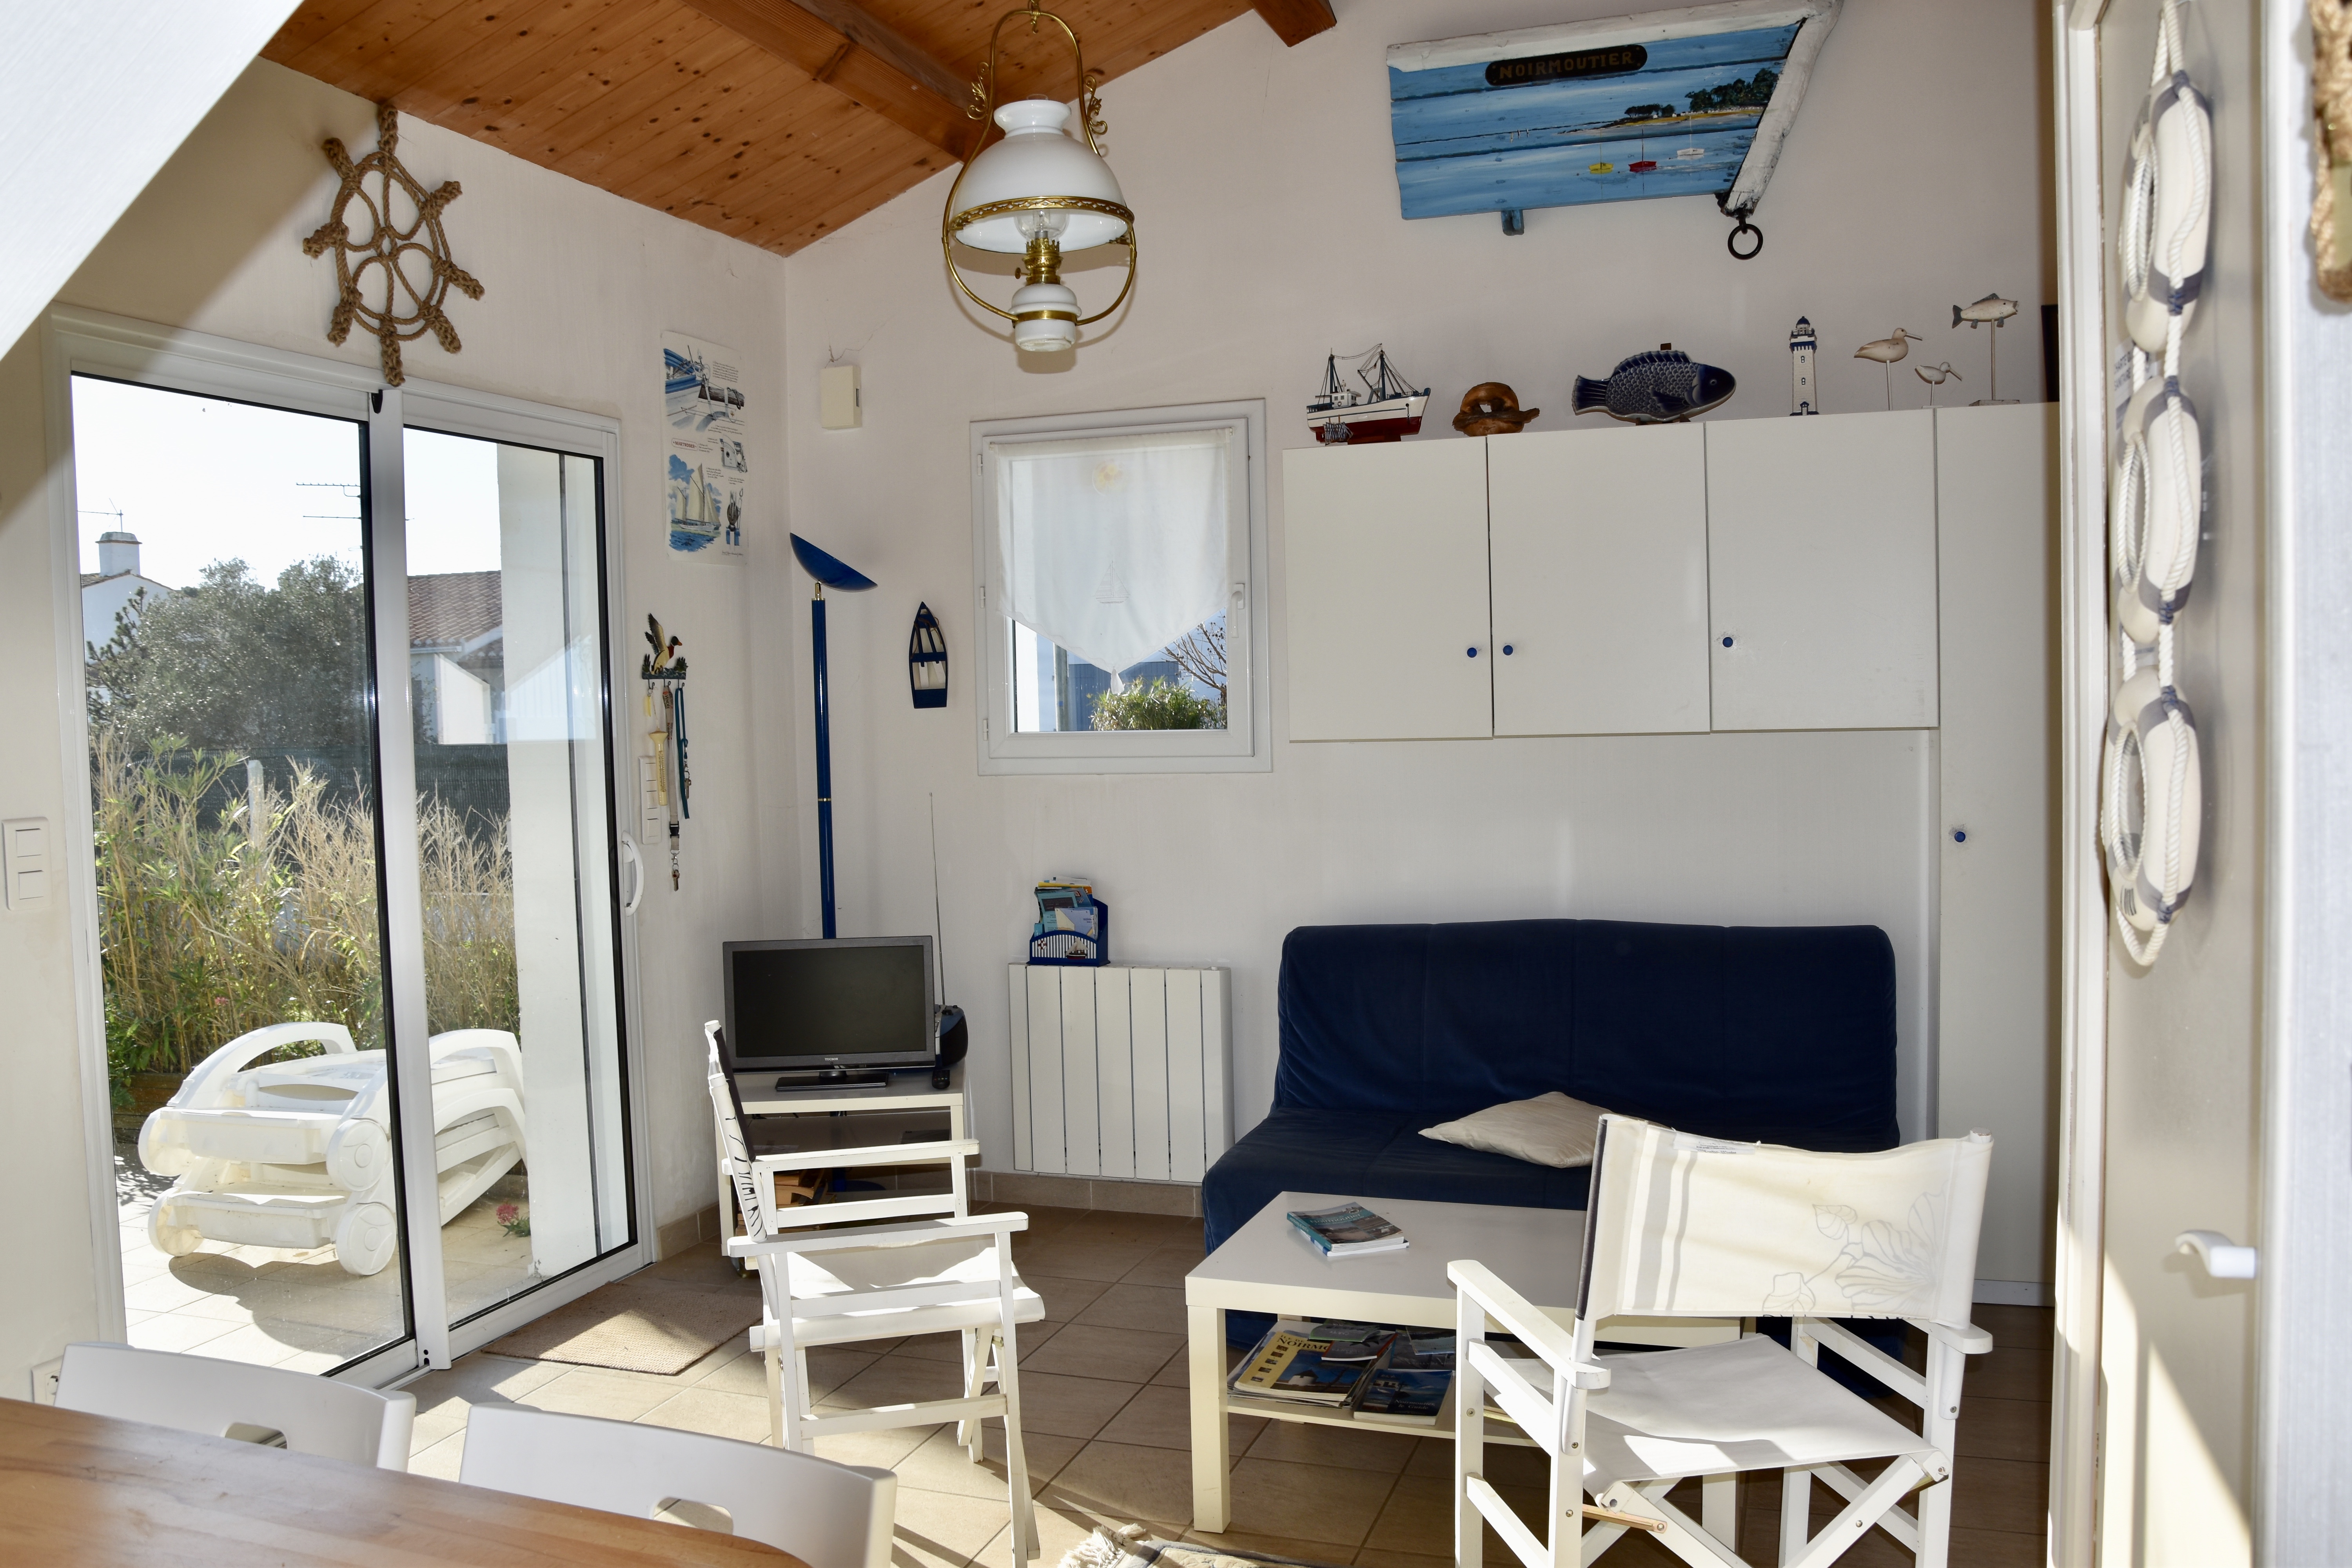 A vendre maison Noirmoutier en l'Ile 85330; 672 750 €